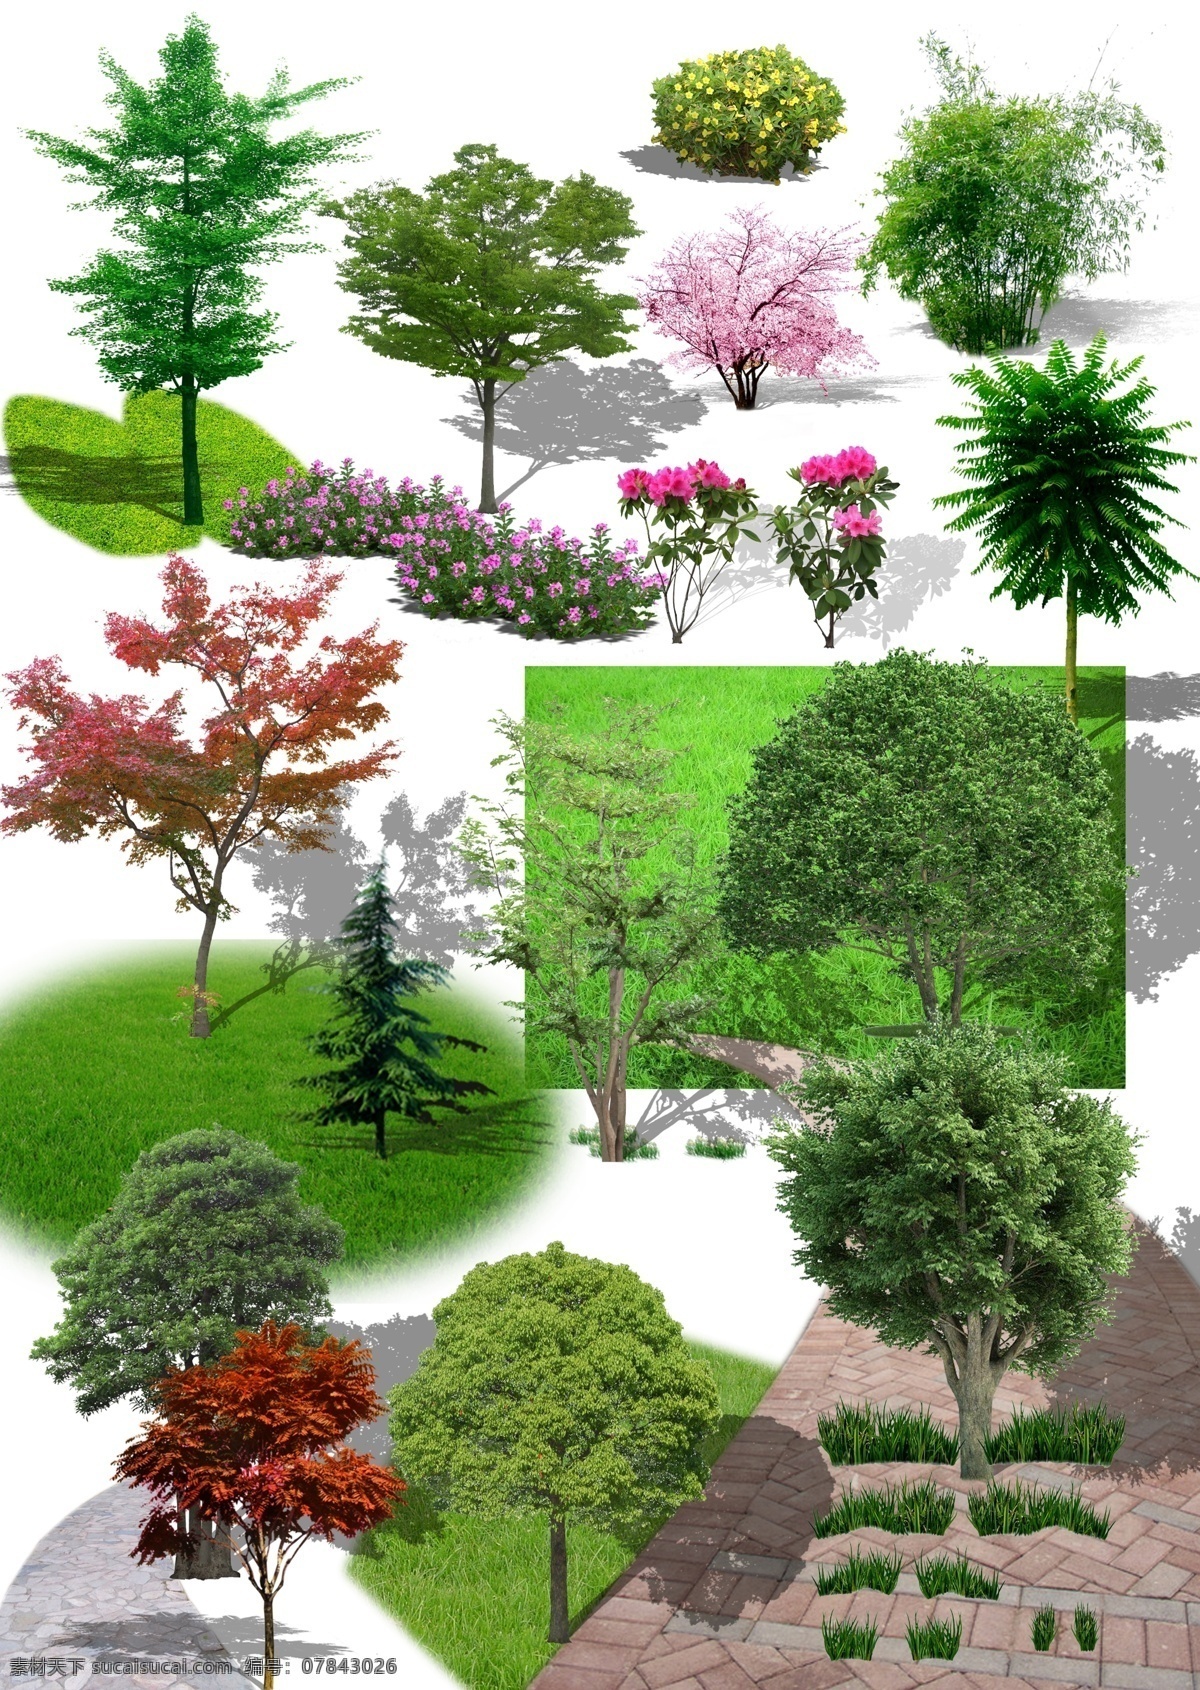 植物 植物素材 树木 乔木 绿色植物 绿叶 开花植物 苗木 自然景观 建筑园林 分层 环境设计 园林设计